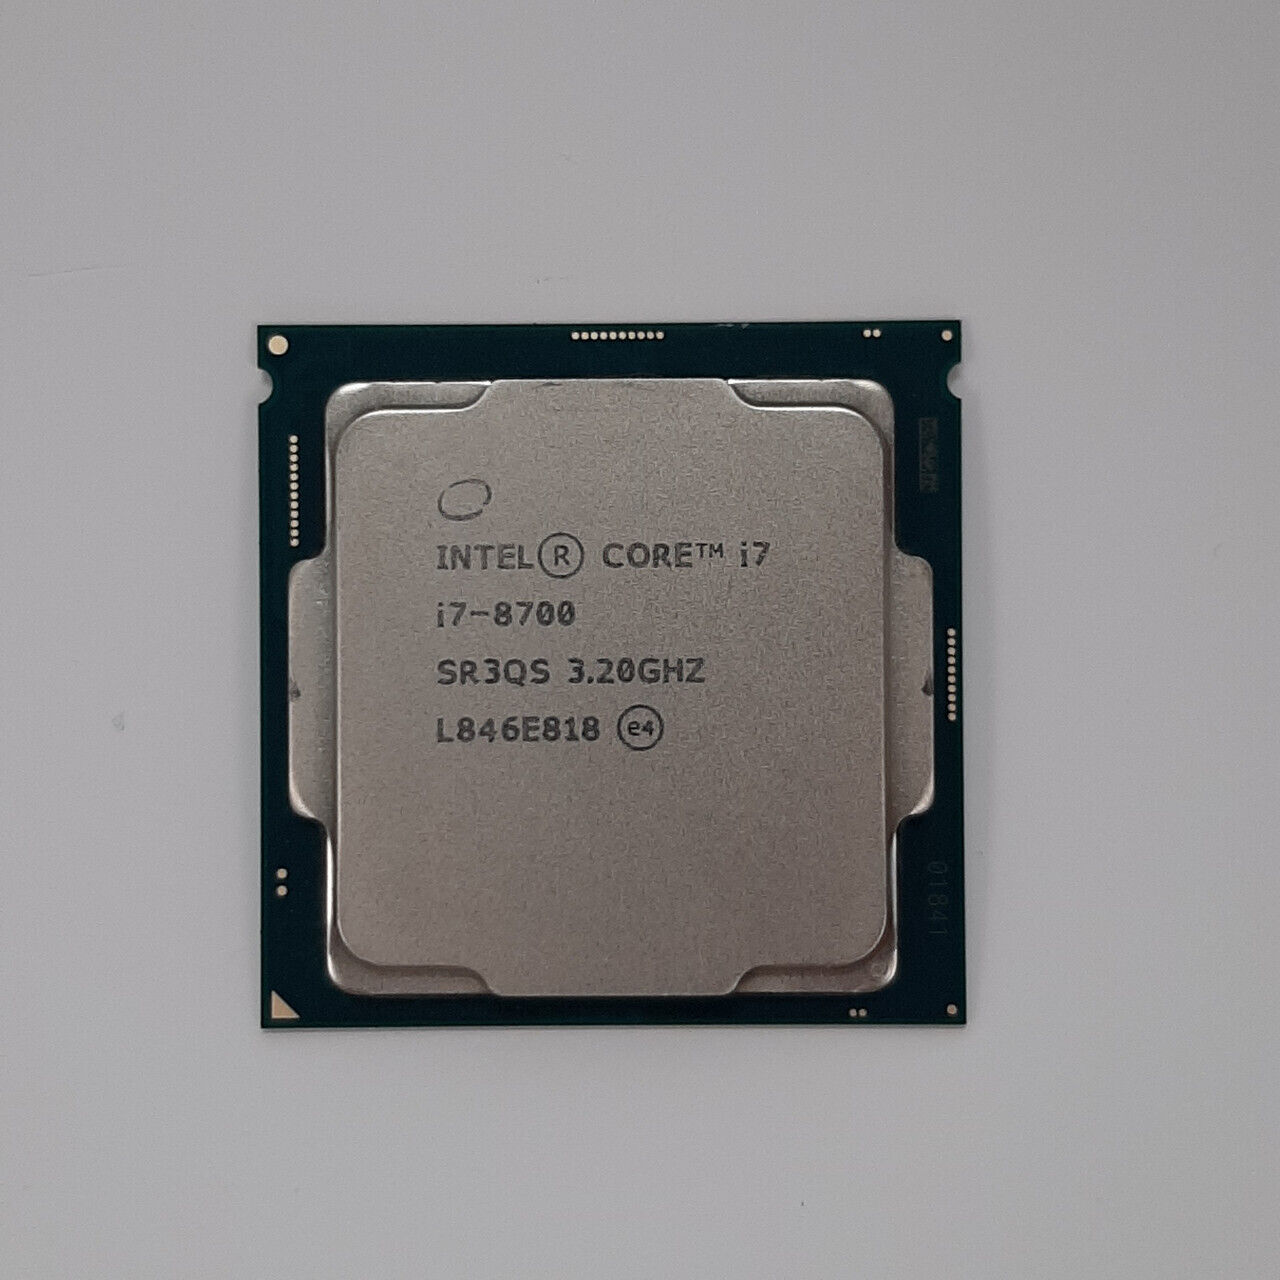 Intel Core i7-8700 SR3QS 3.20GHz Processor